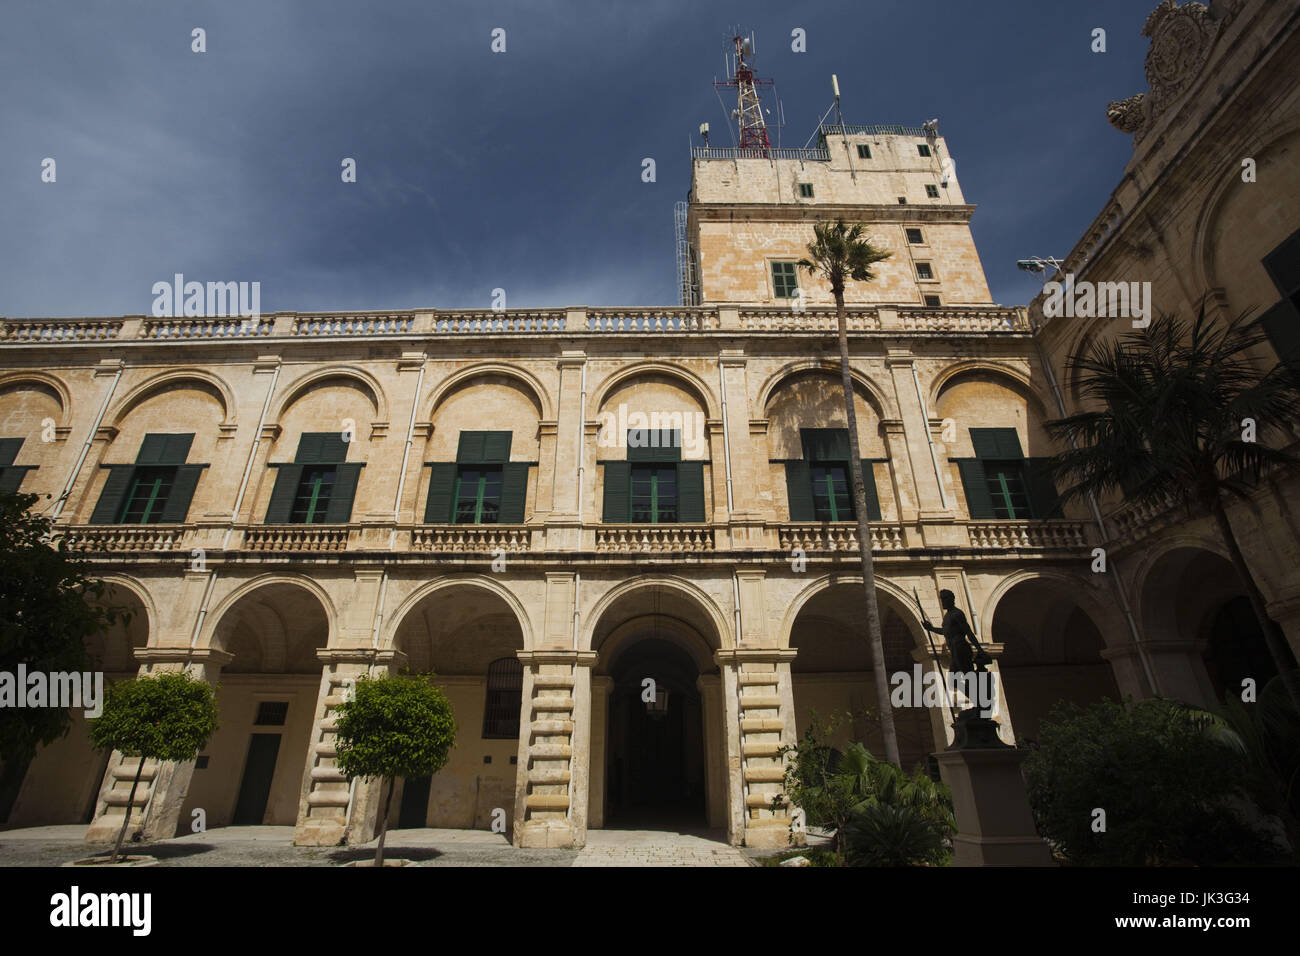 Malta, Valletta, Grand Master's Palace, exterior Stock Photo